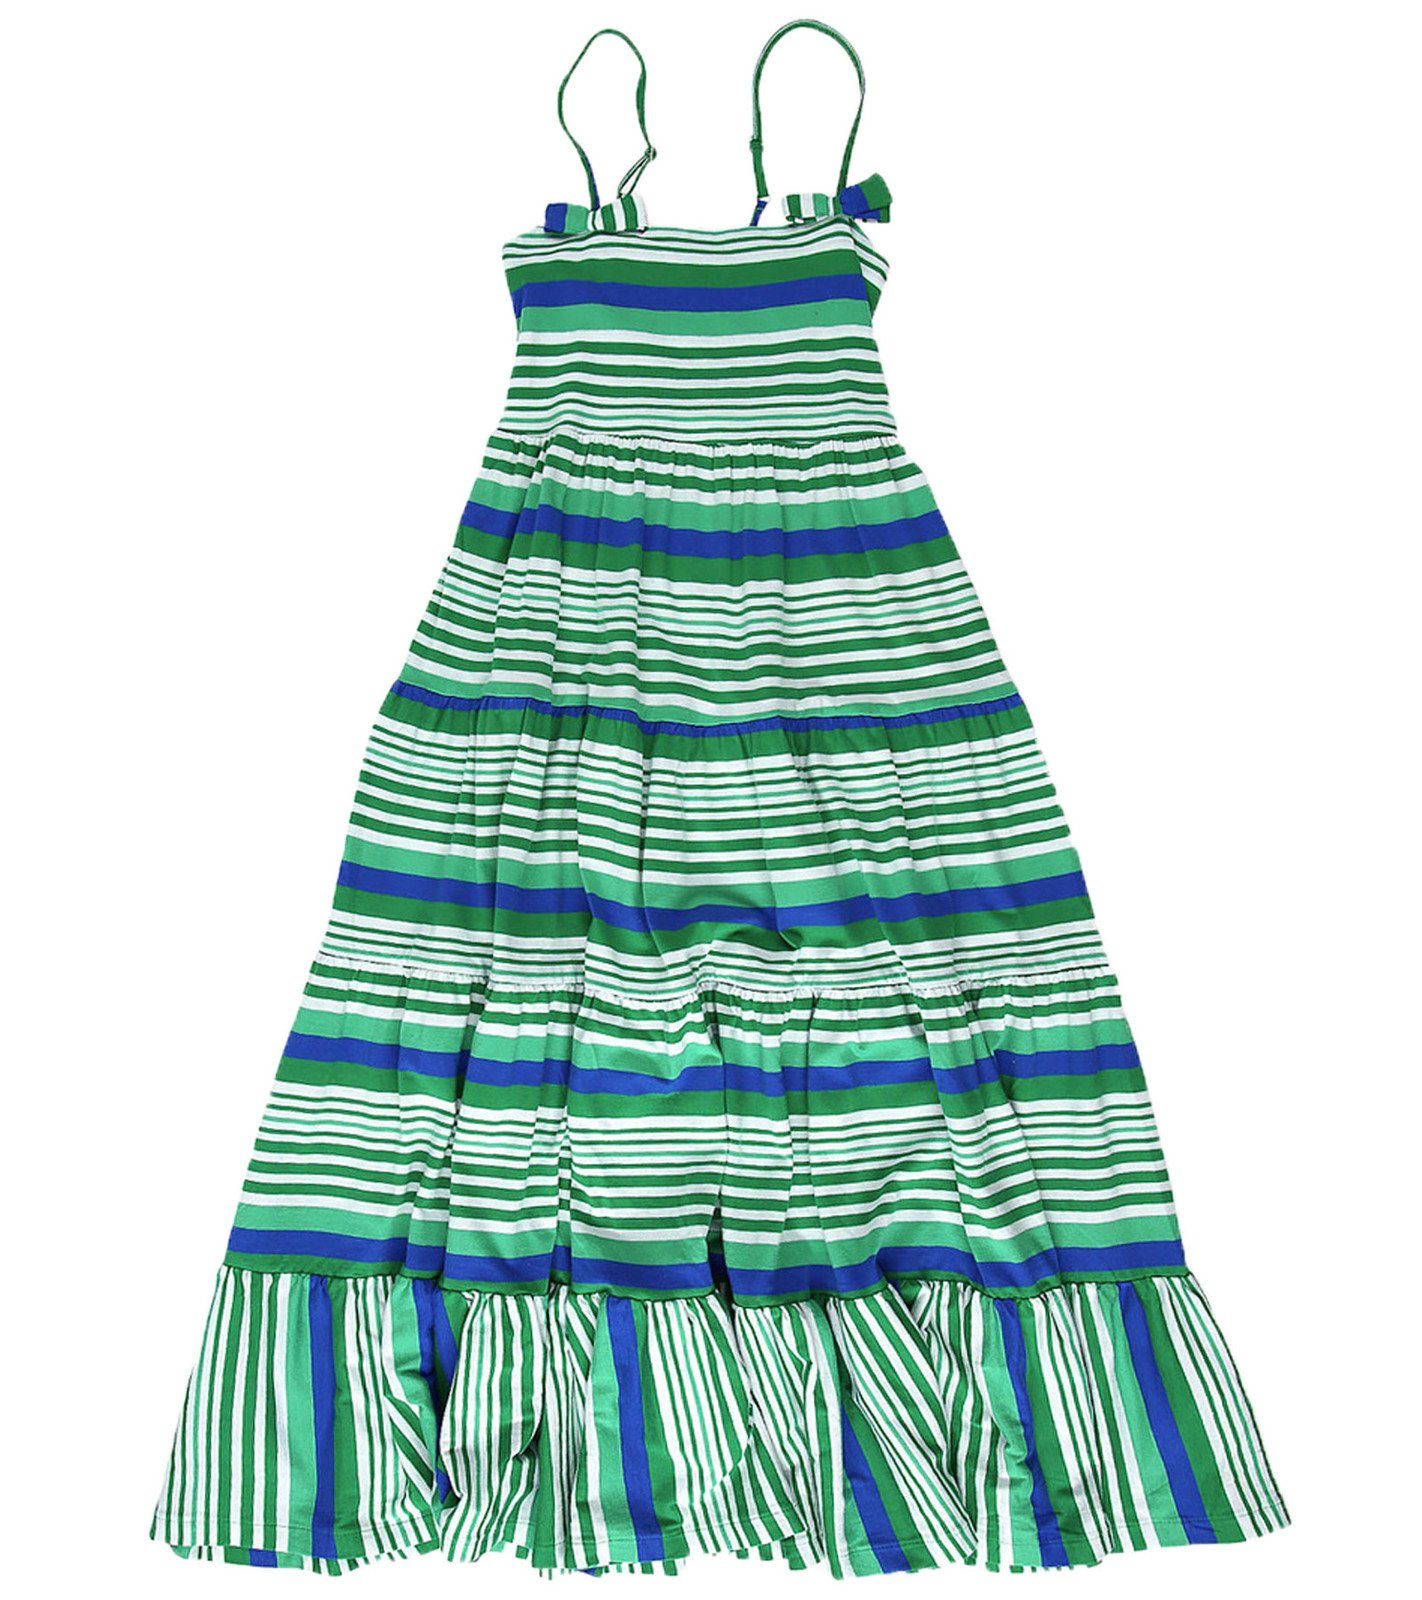 Kanz Sommerkleid »KANZ Sommer-Kleid schönes Kinder Spaghetti-Träger Kleid  gestreift Freizeit-Kleid Grün gestreift« online kaufen | OTTO